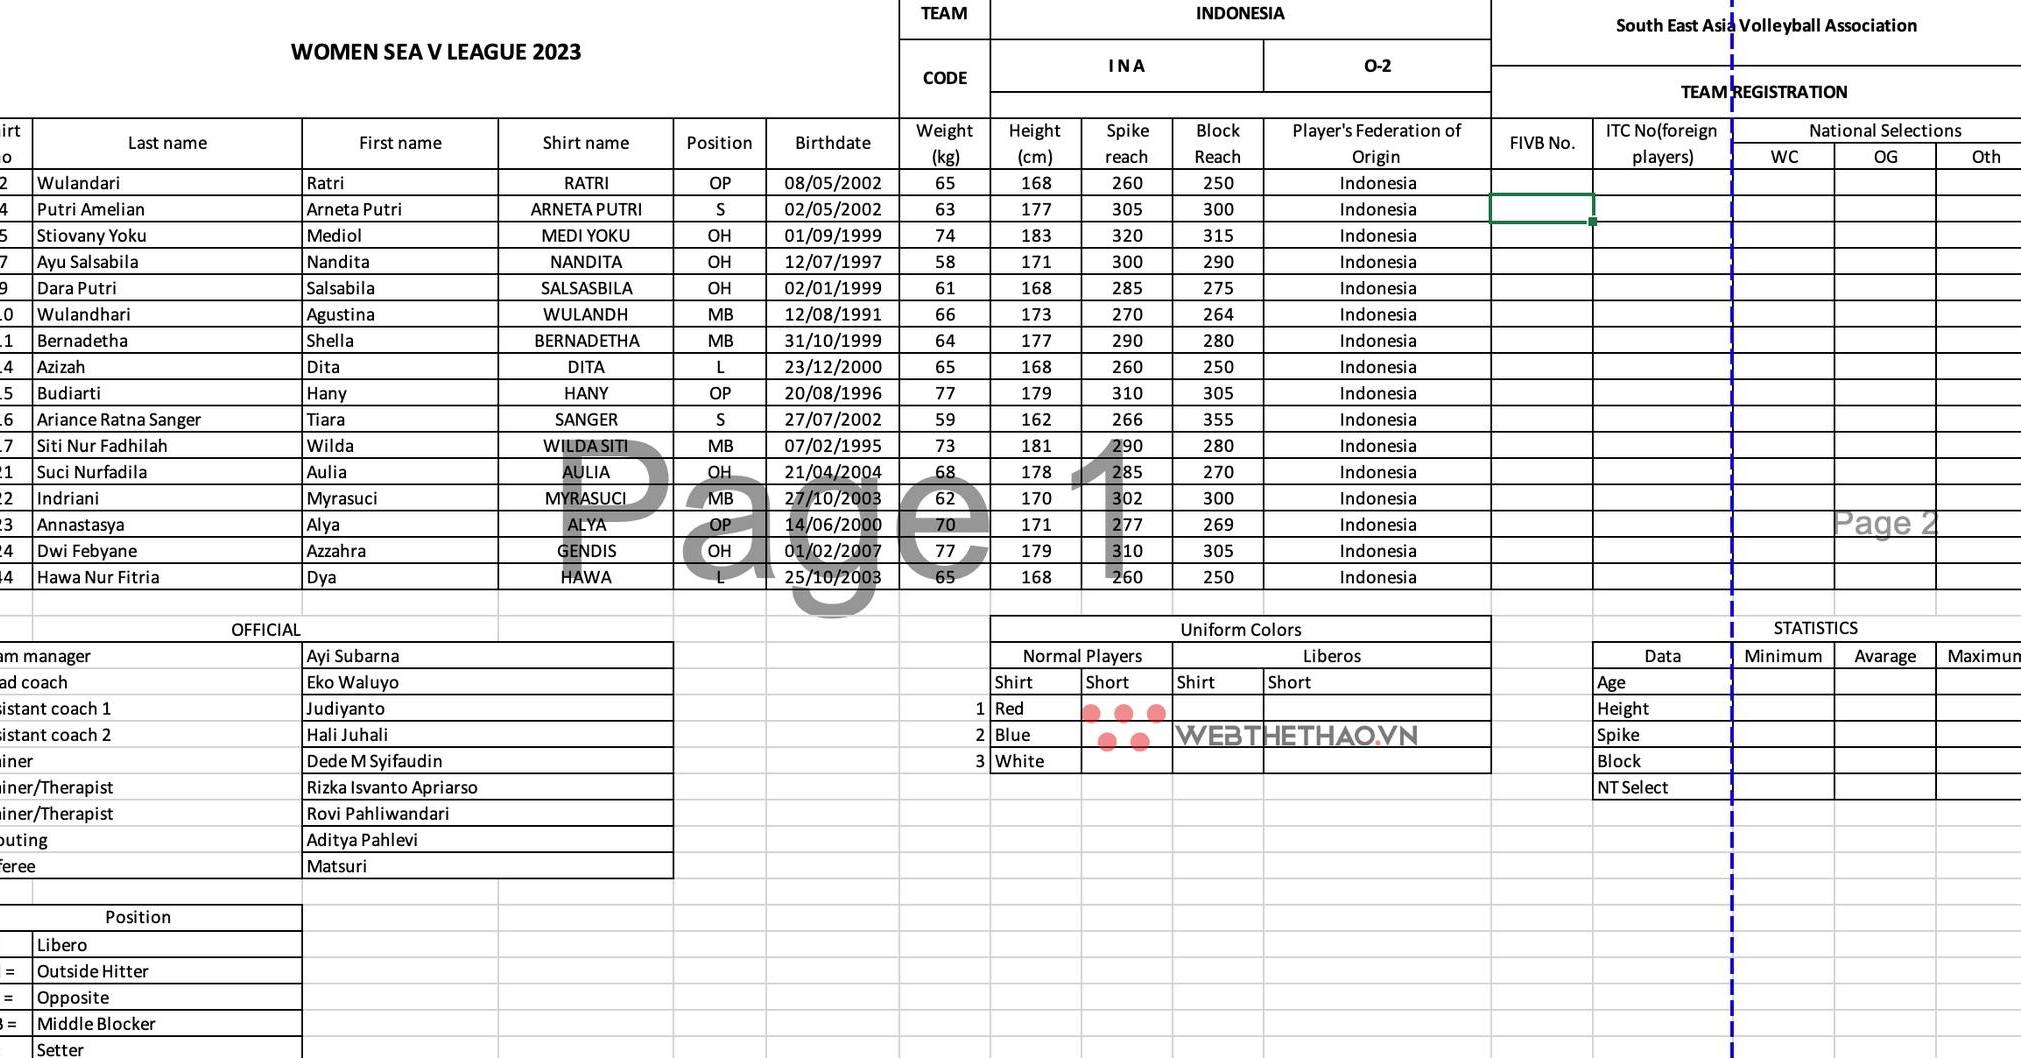 Danh sách đội hình, chiều cao trung bình đội tuyển bóng chuyền nữ Indonesia dự SEA V.League 2023